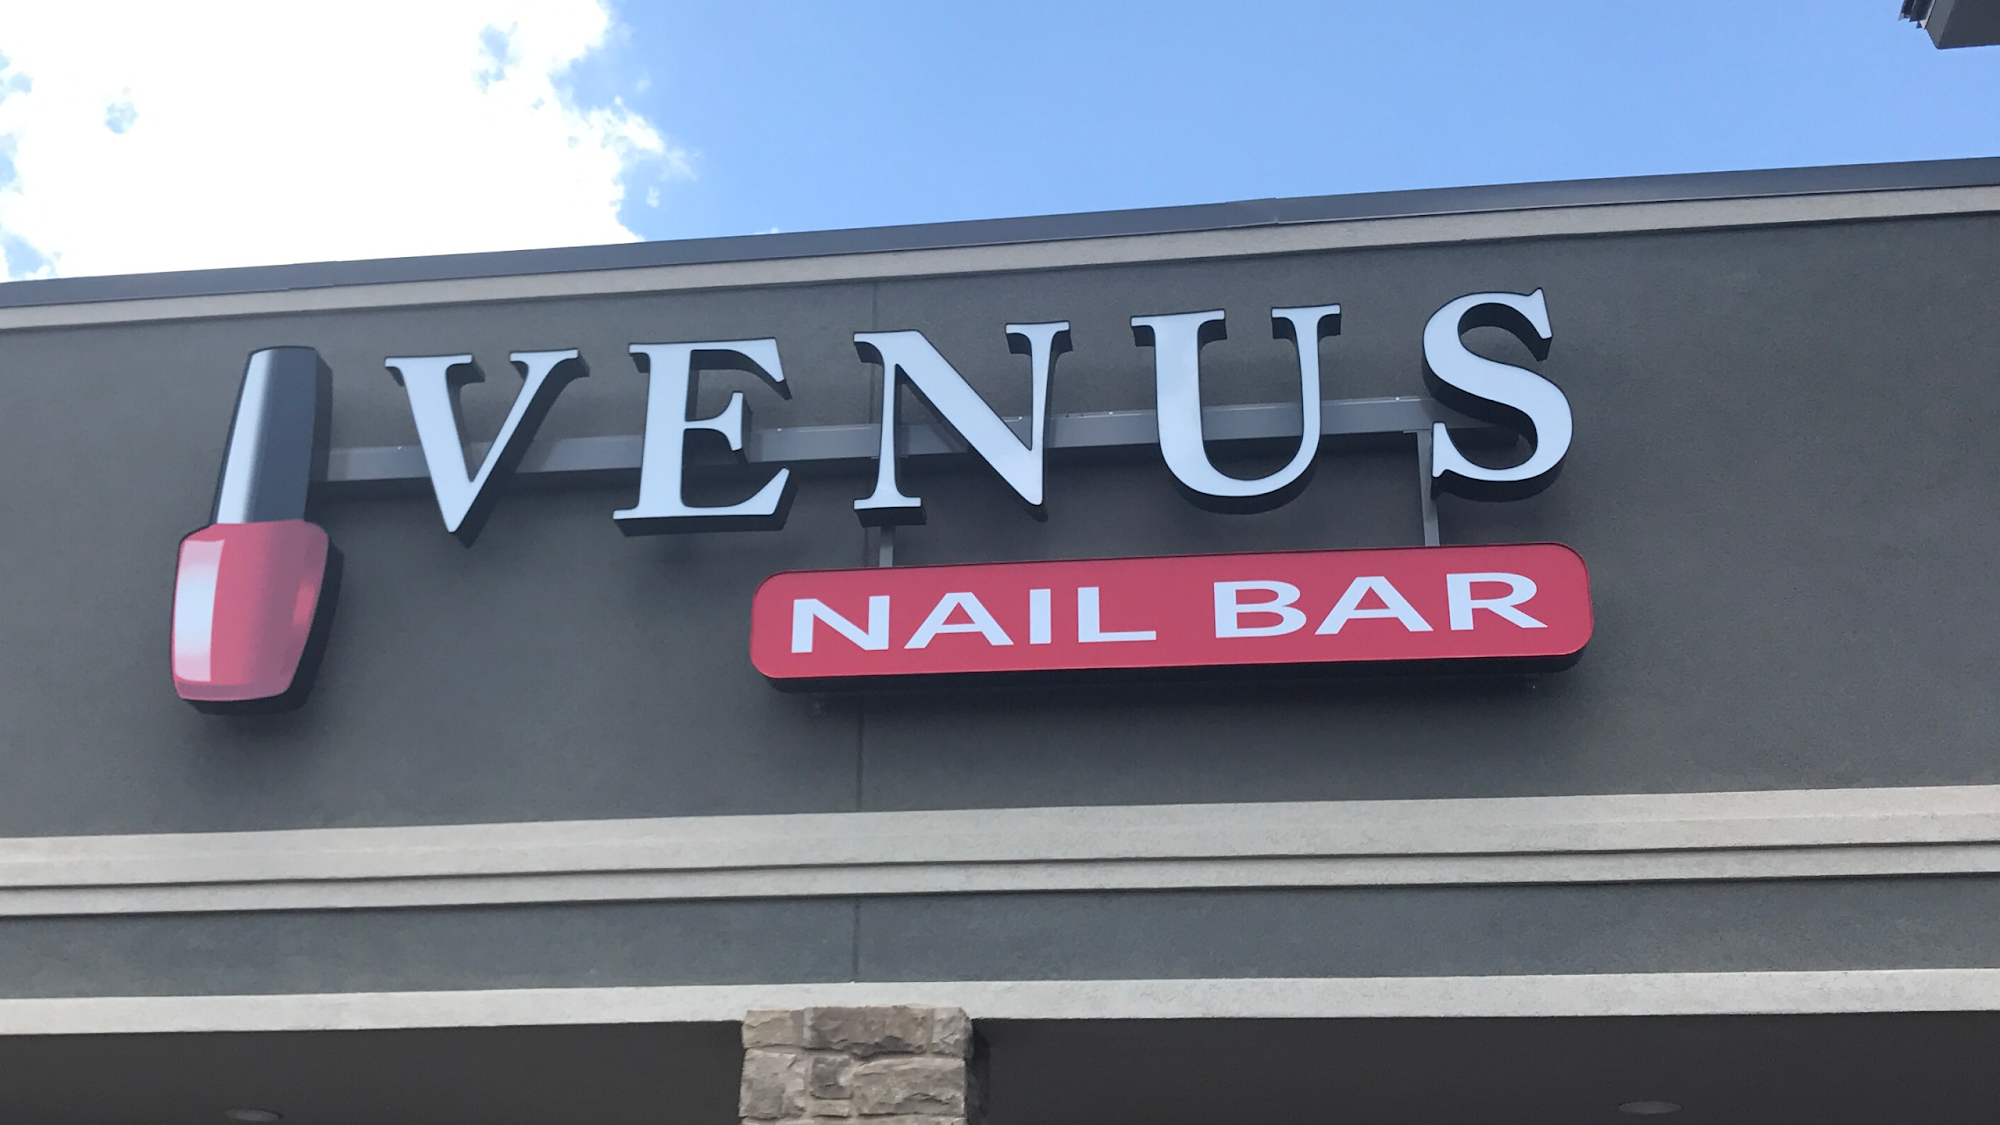 VENUS Nail Bar